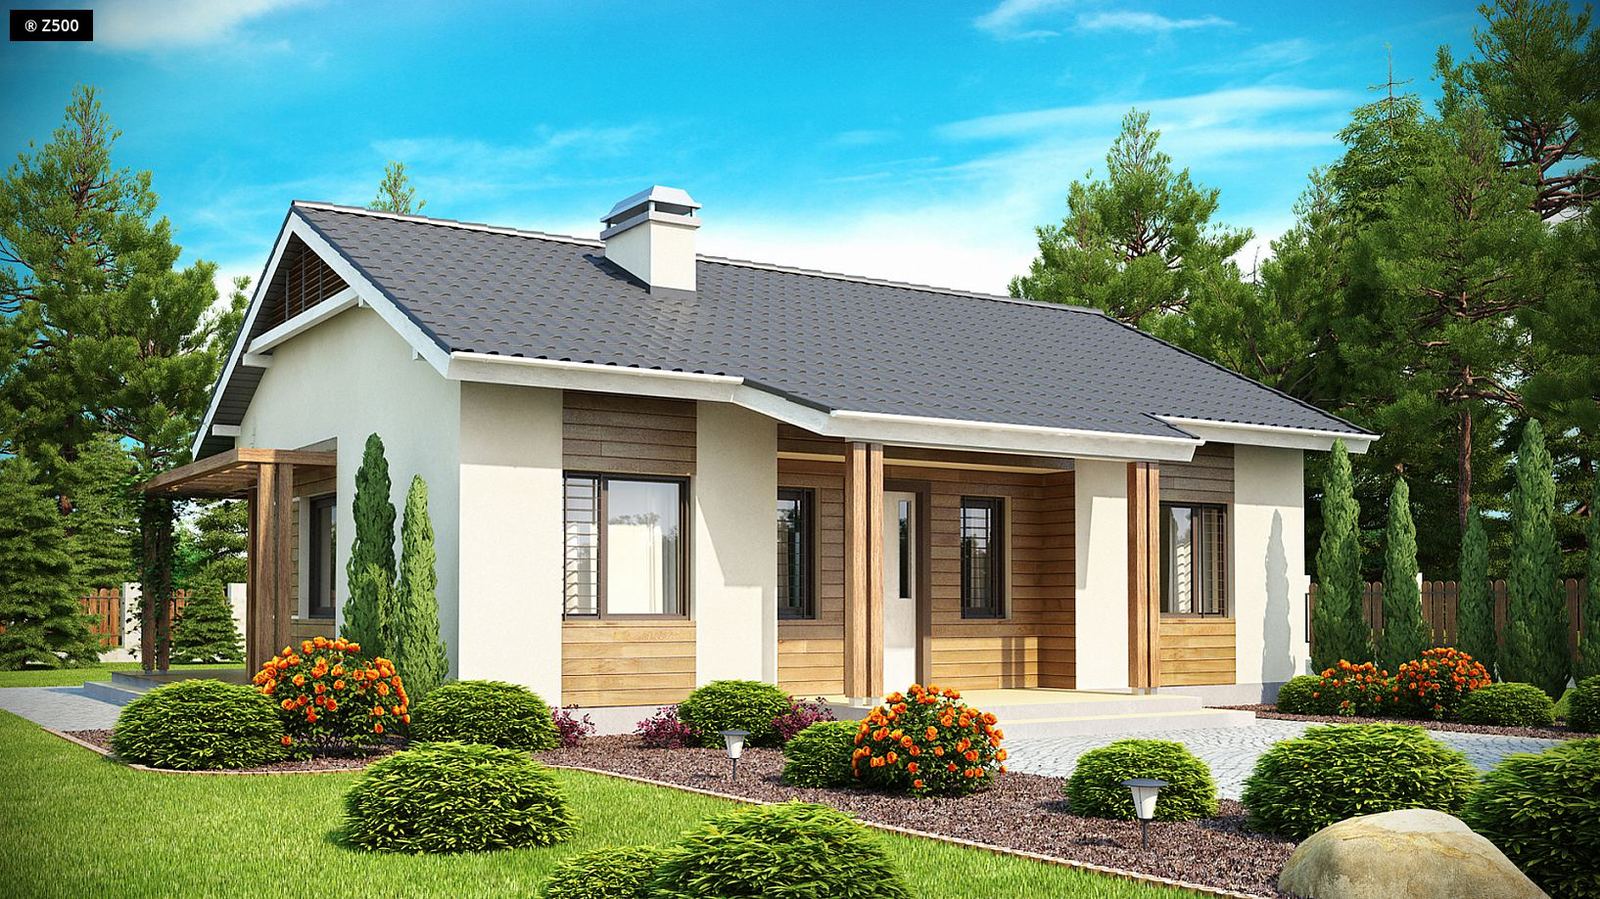 Giới thiệu mẫu thiết kế nhà gỗ 3 gian kết hợp nhà ngang mái thái hiện đại